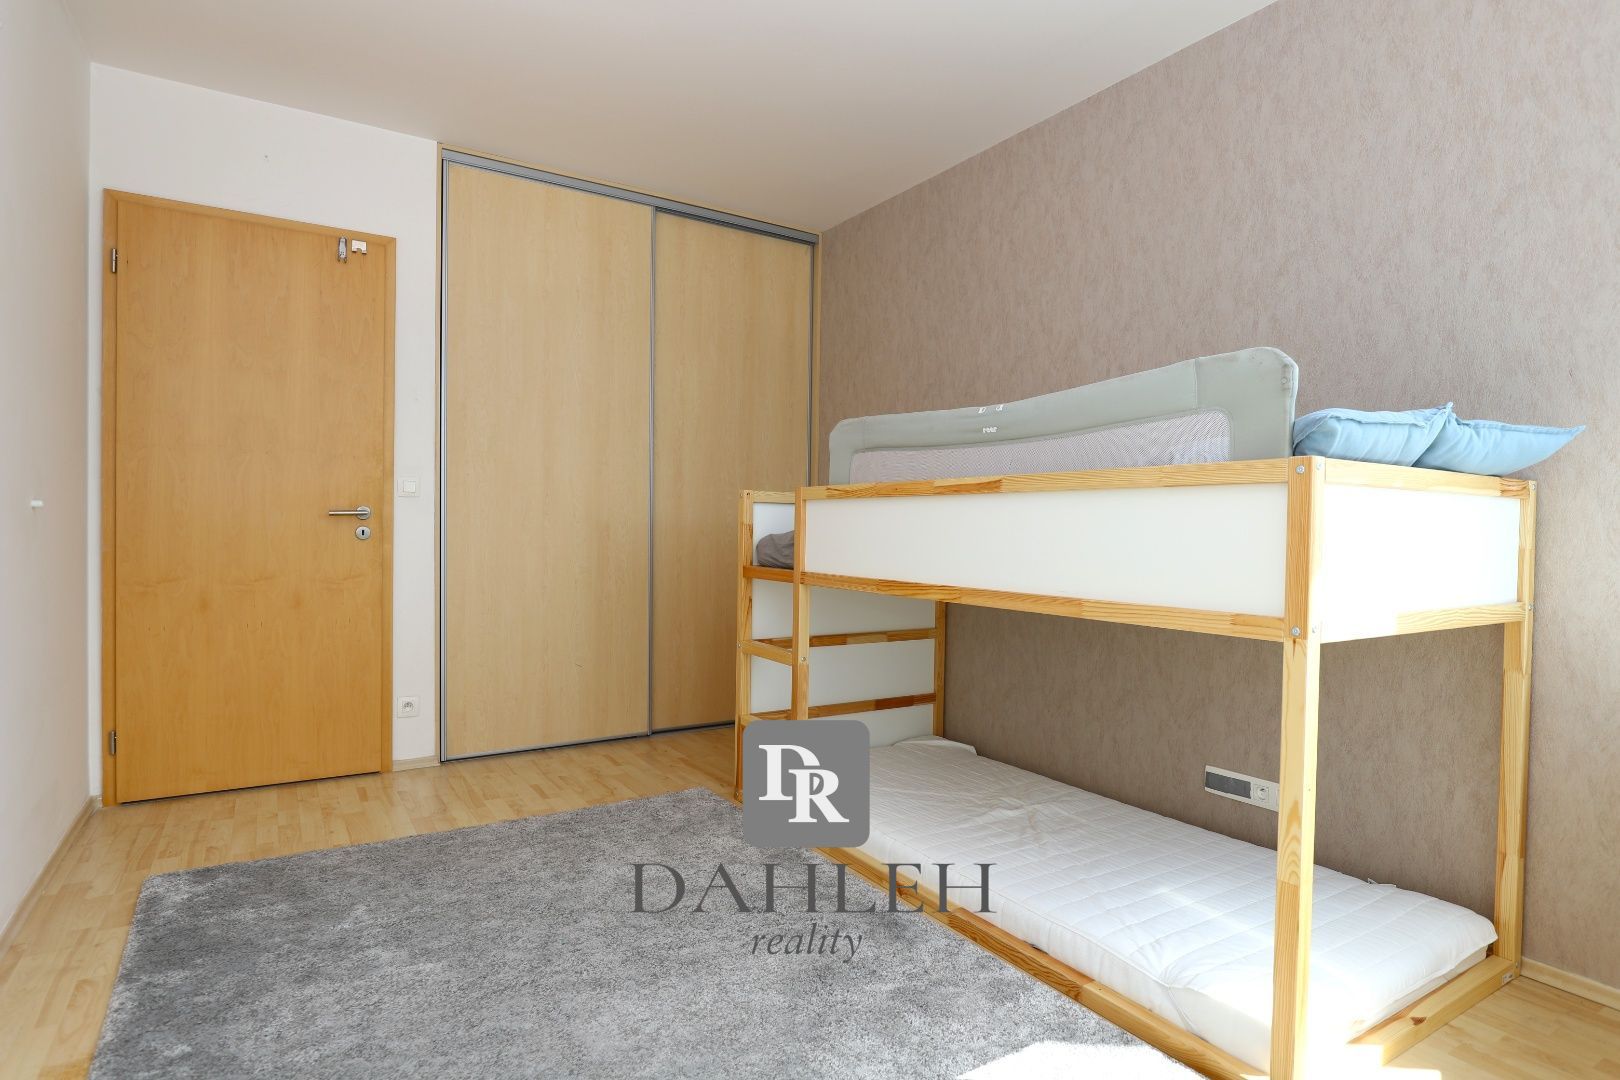 DAHLEH-Na prenájom 3-izbový byt v 3 vežiach s výhľadom